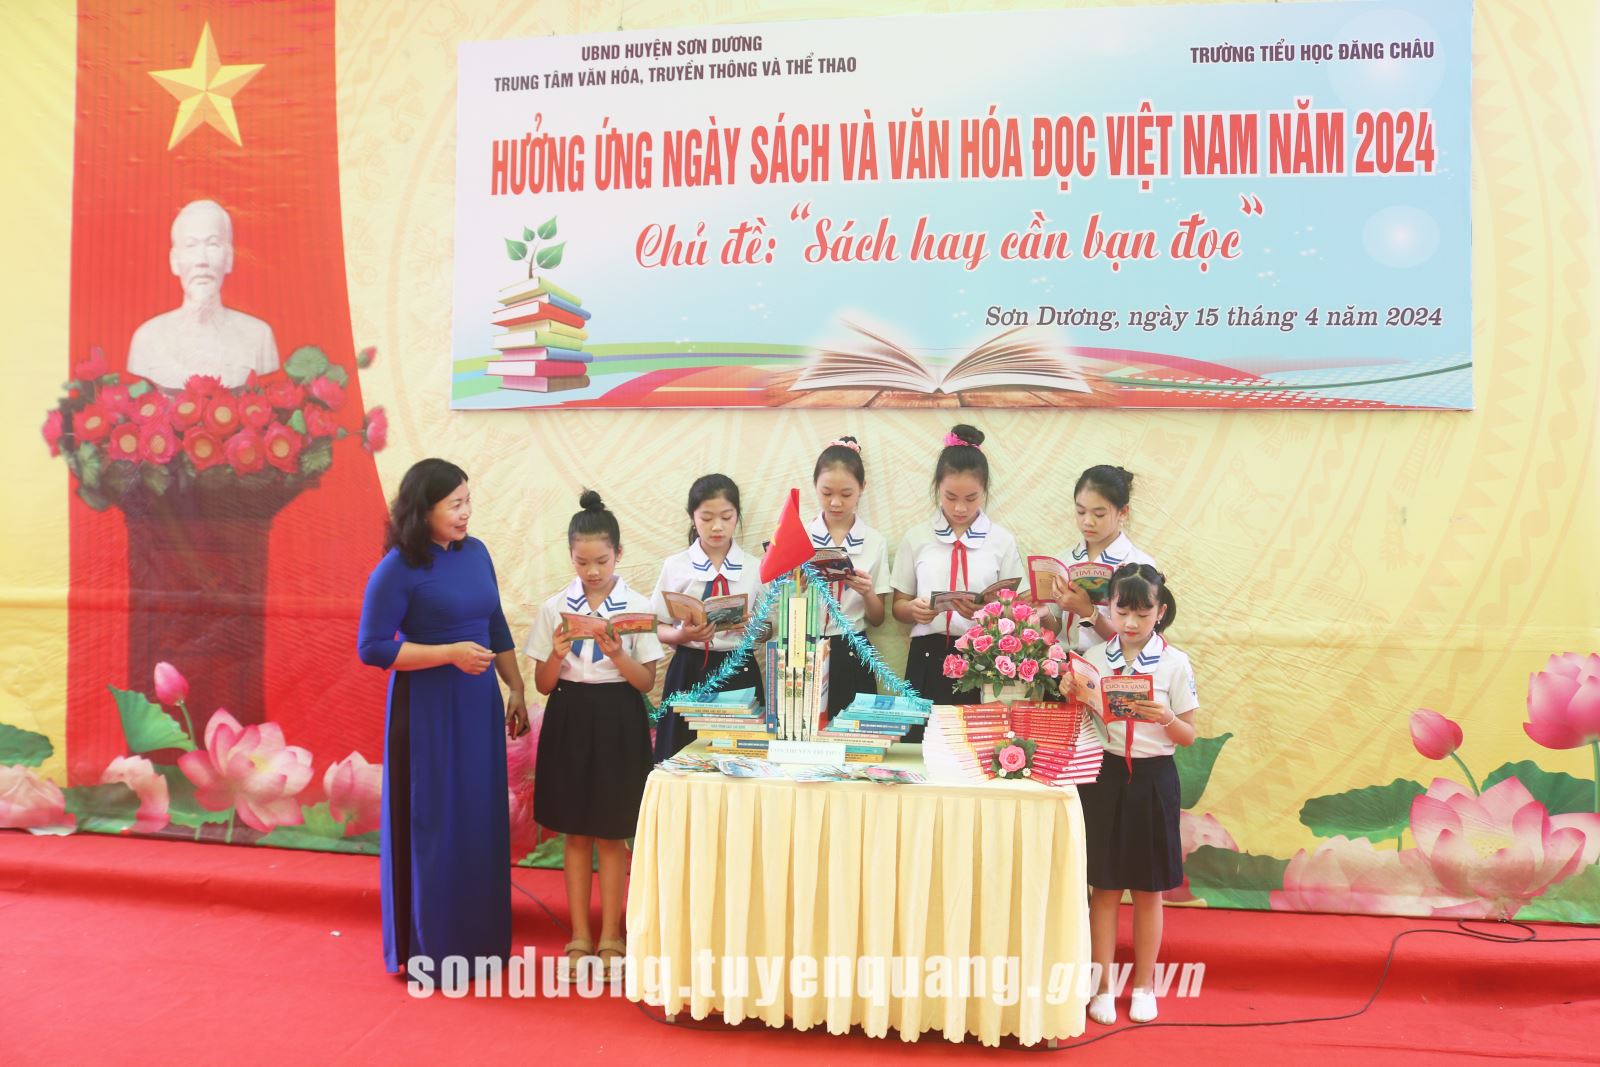 Sơn Dương tổ chức Ngày Sách và Văn hóa đọc Việt Nam năm 2024